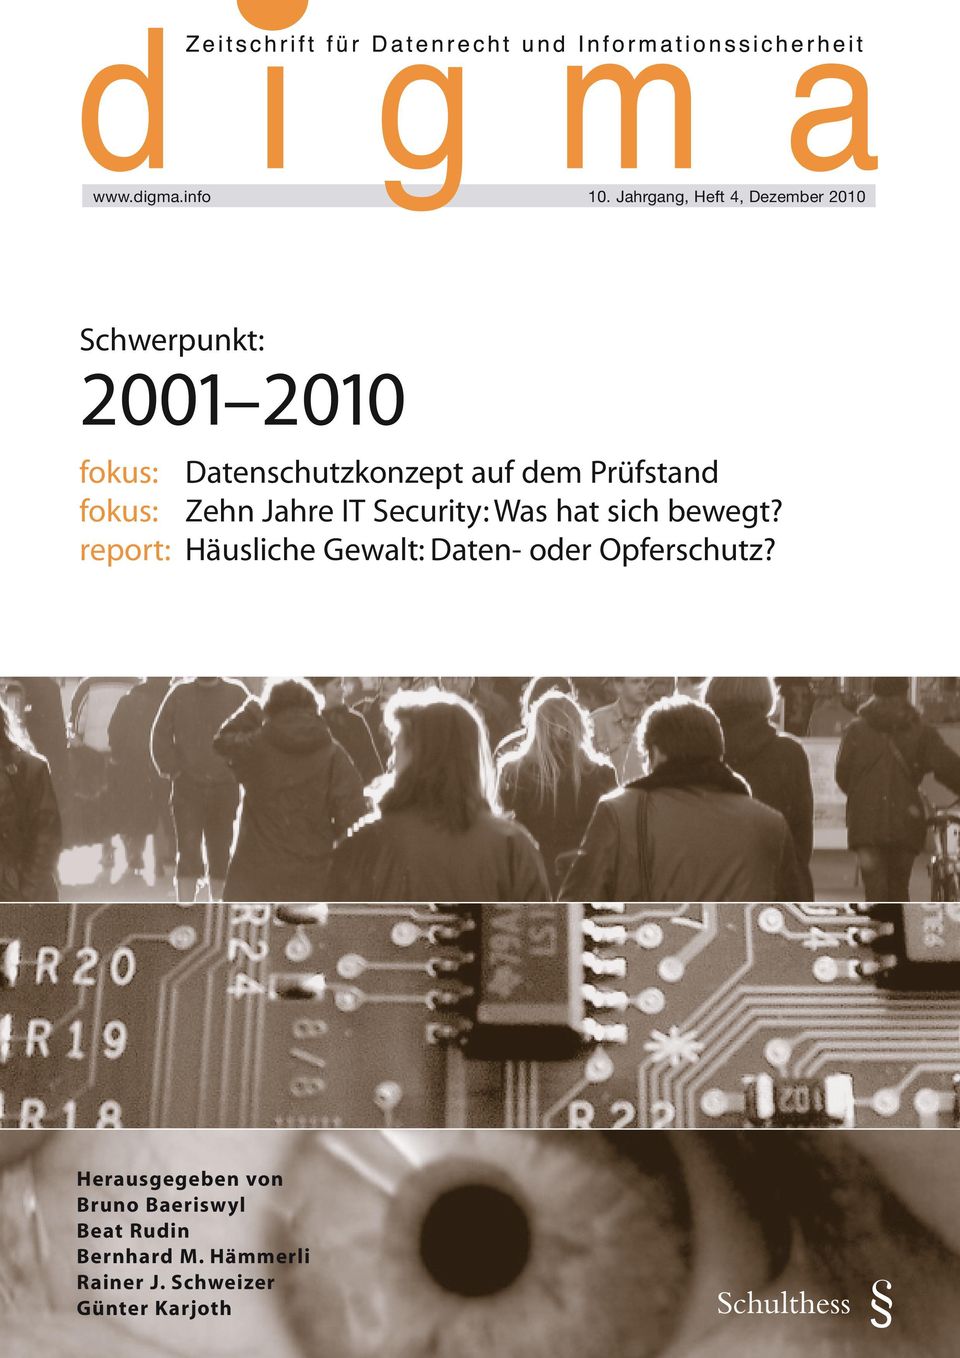 auf dem Prüfstand fokus: Zehn Jahre IT Security: Was hat sich bewegt?